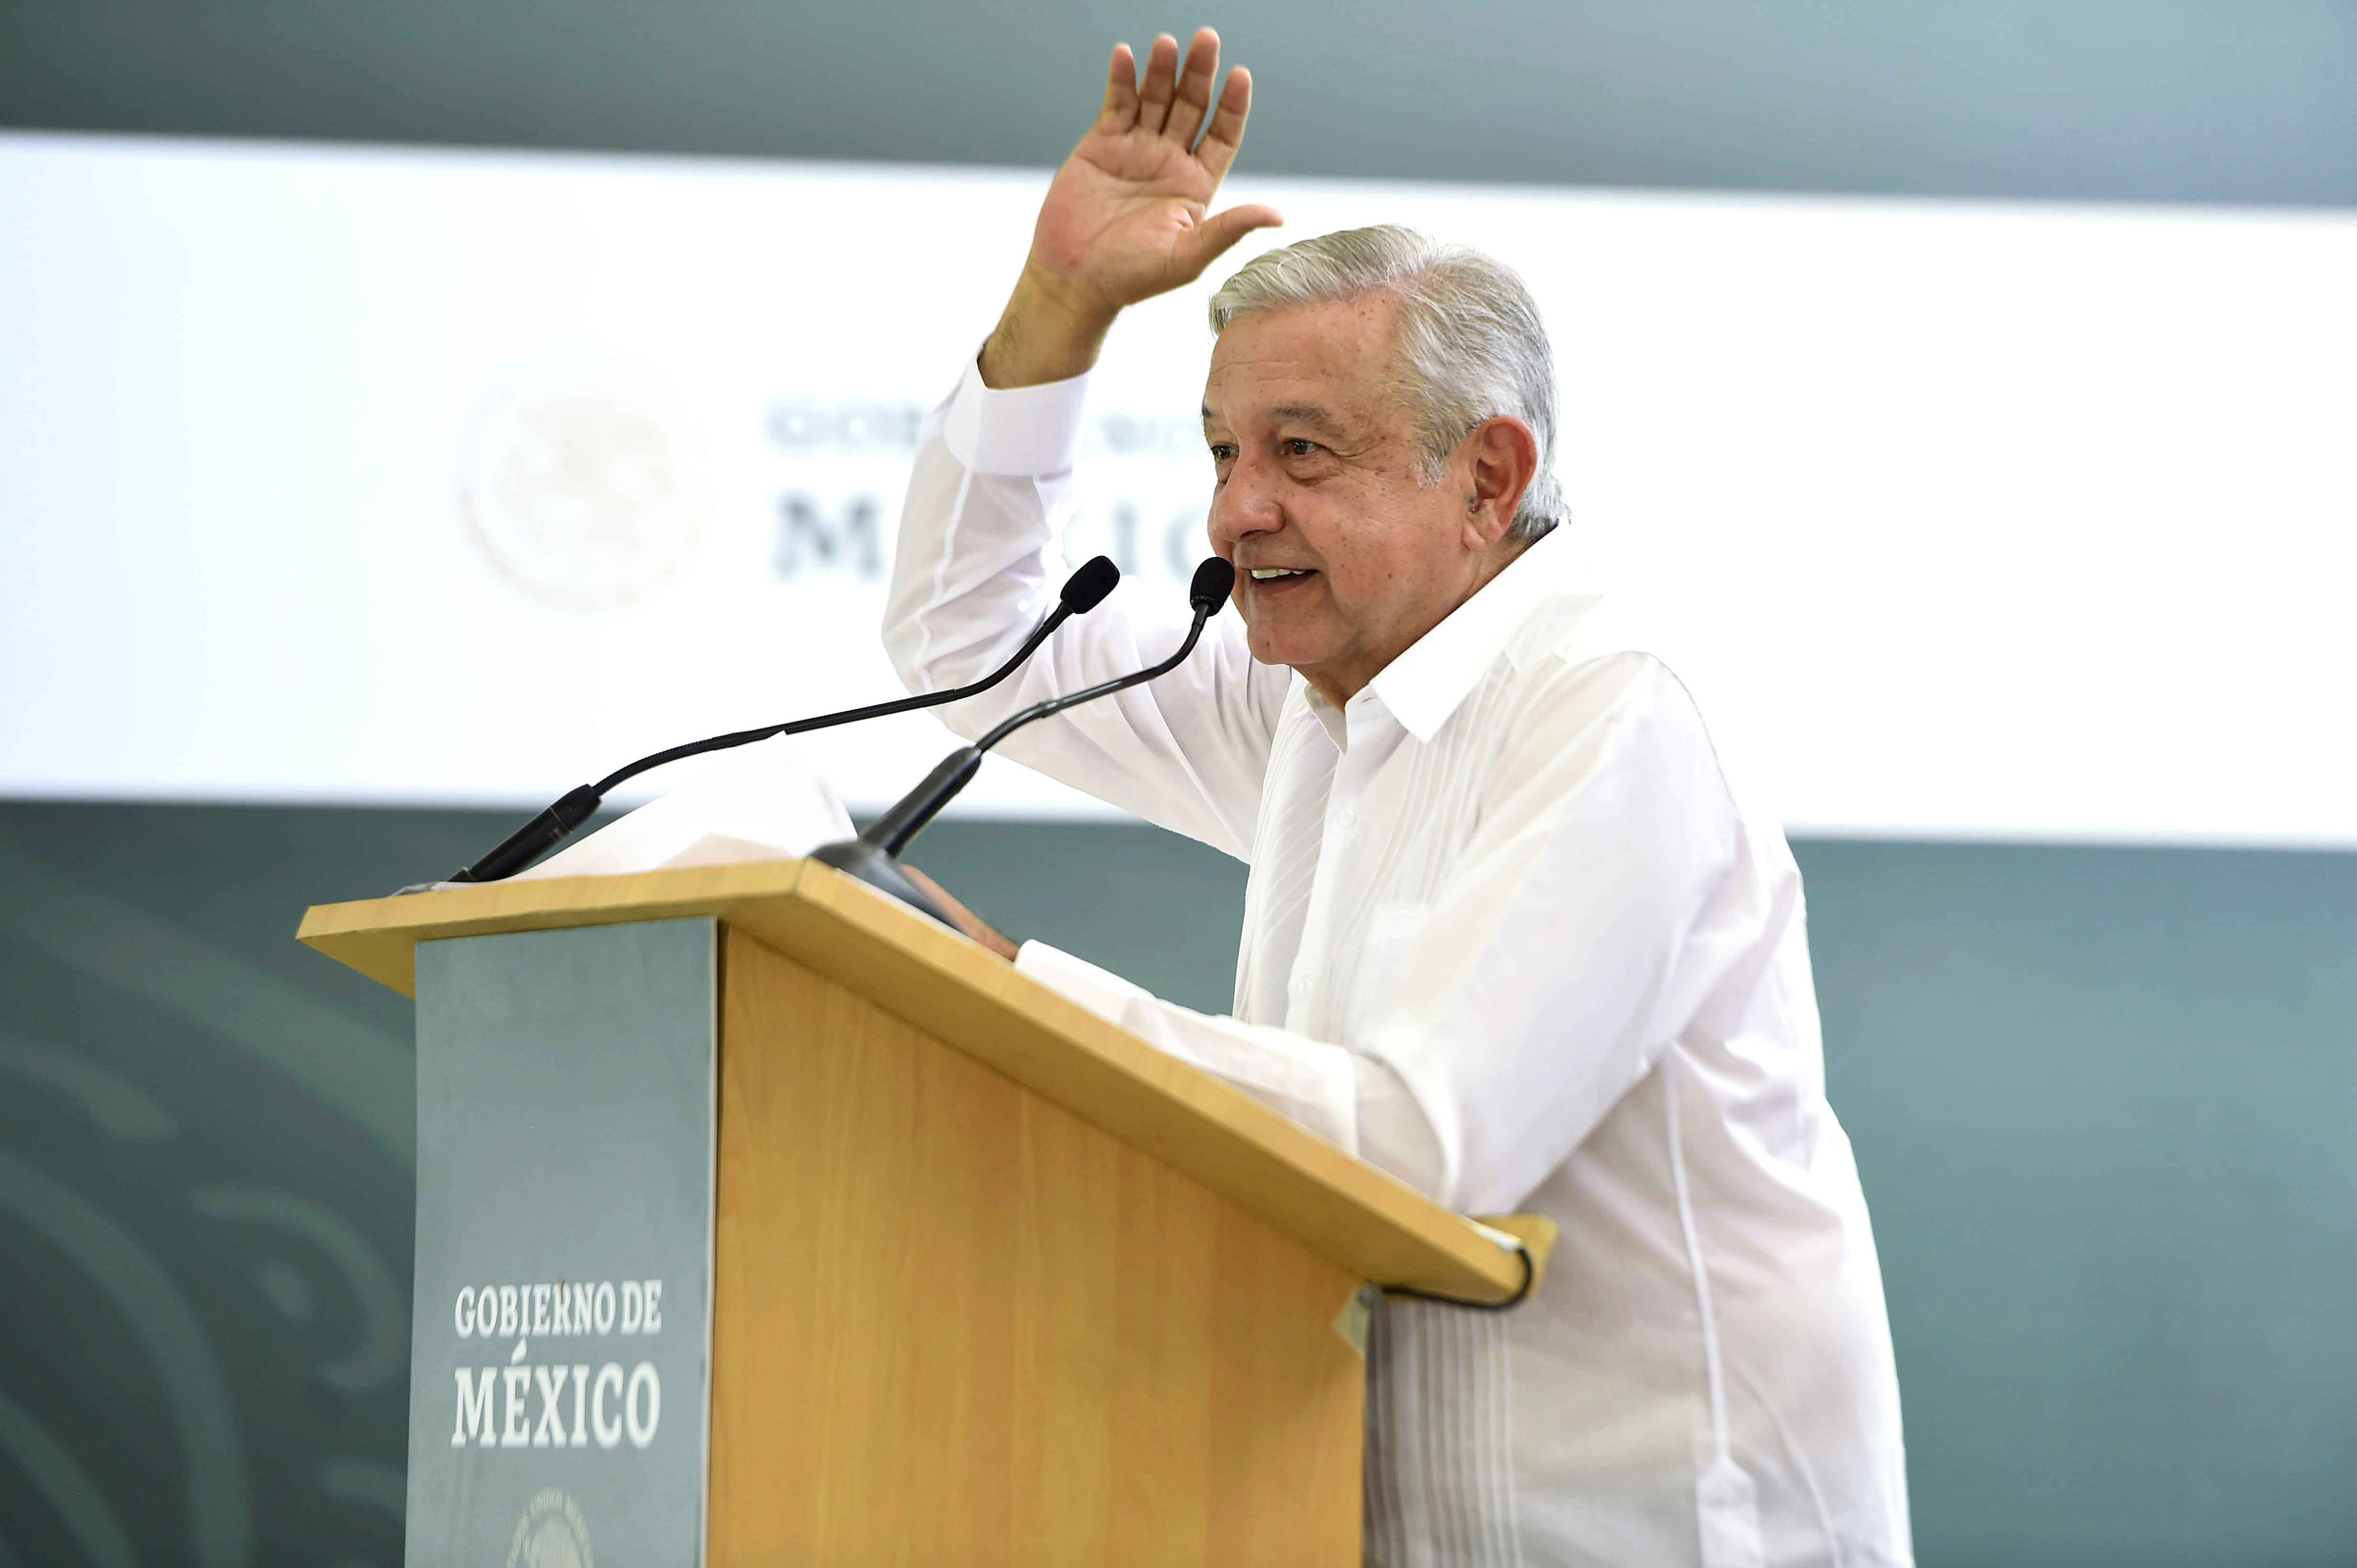 Centroamérica tiene mejores salarios que México: AMLO